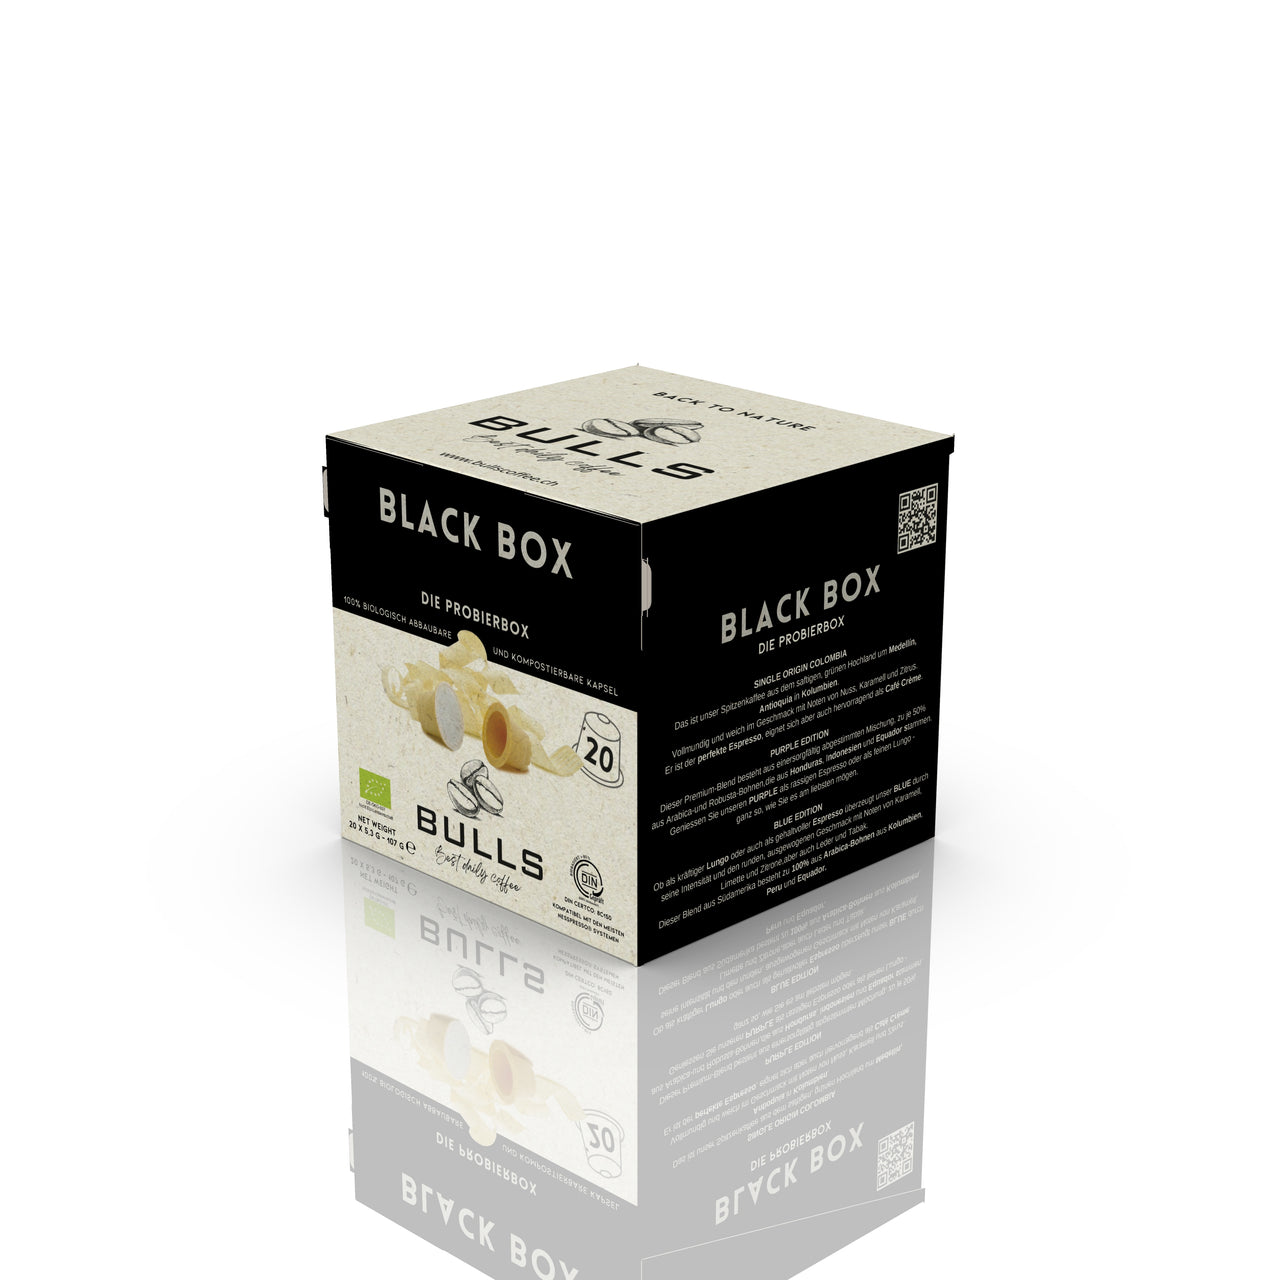 BULLS Blackbox - Holzkapseln - Probierbox